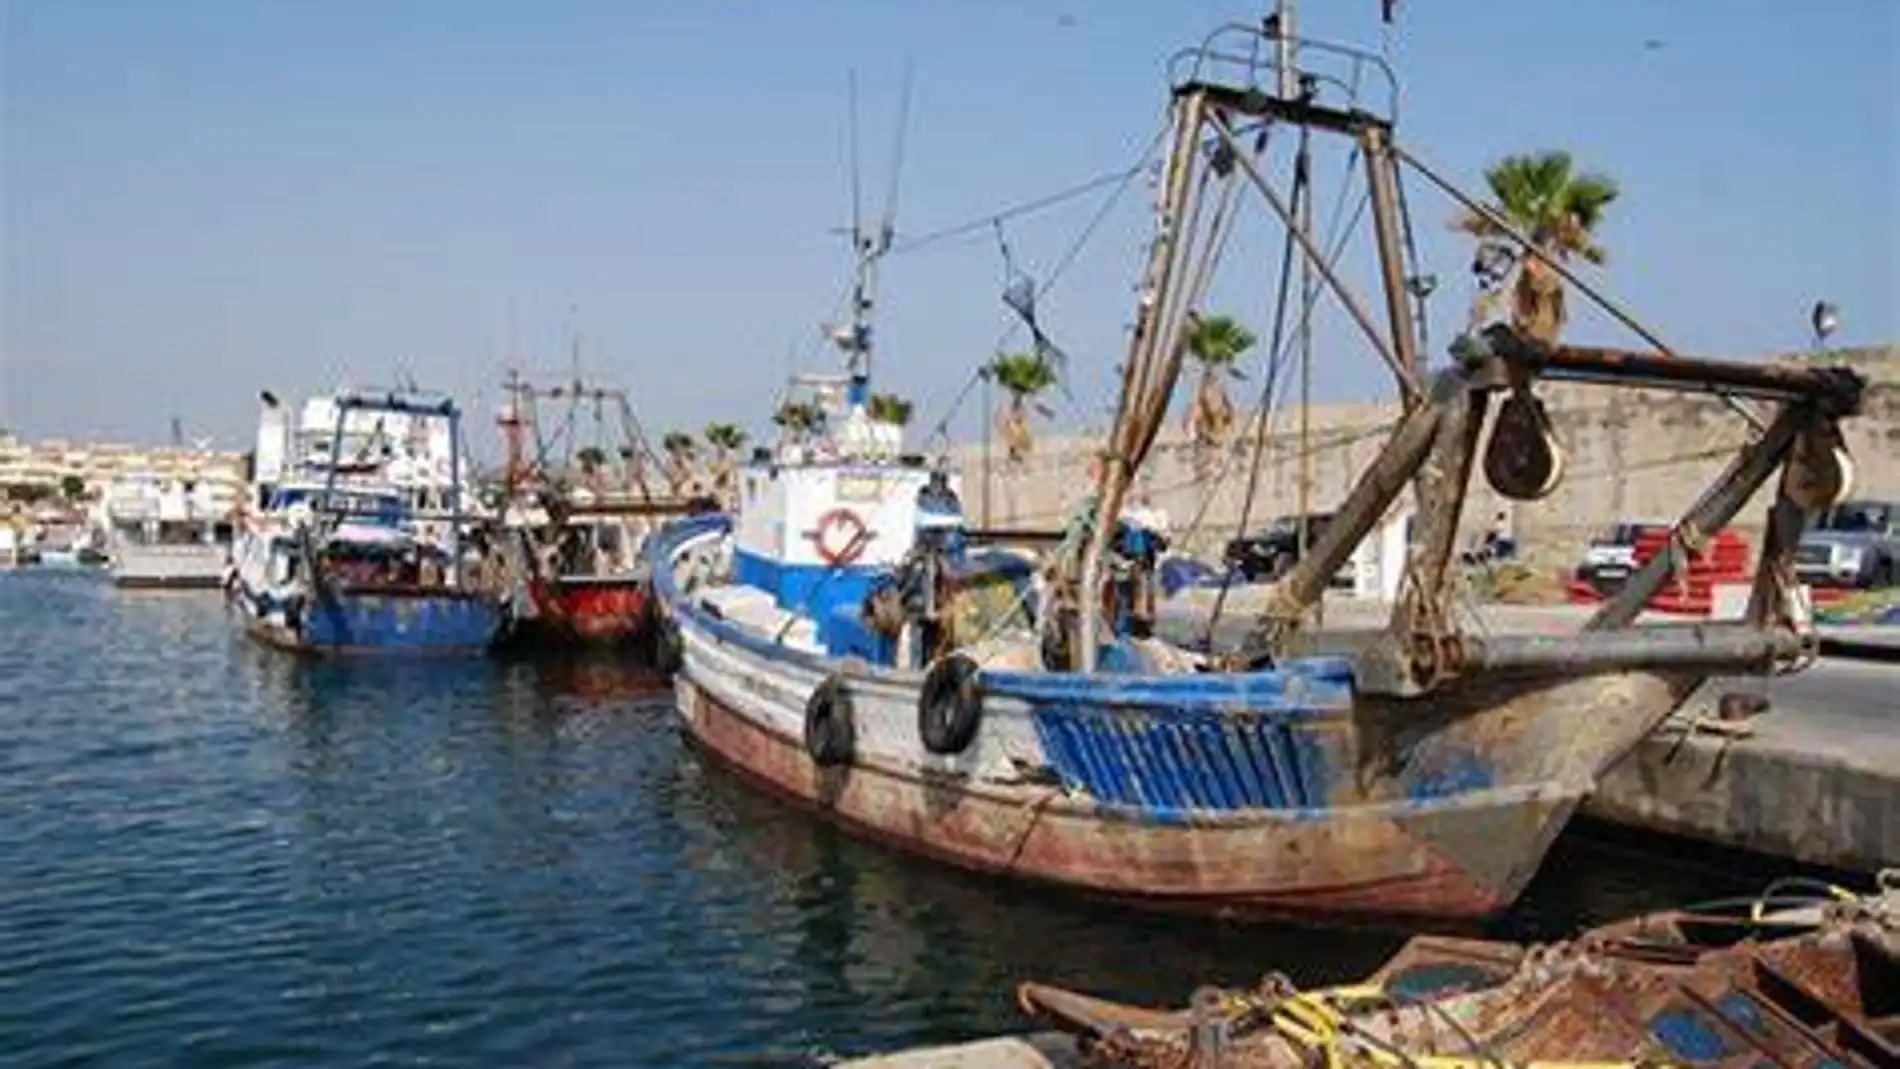 El paro pesquero que afecta a la flota de la Vila Joiosa podría extenderse a todas las cofradías de Alicante